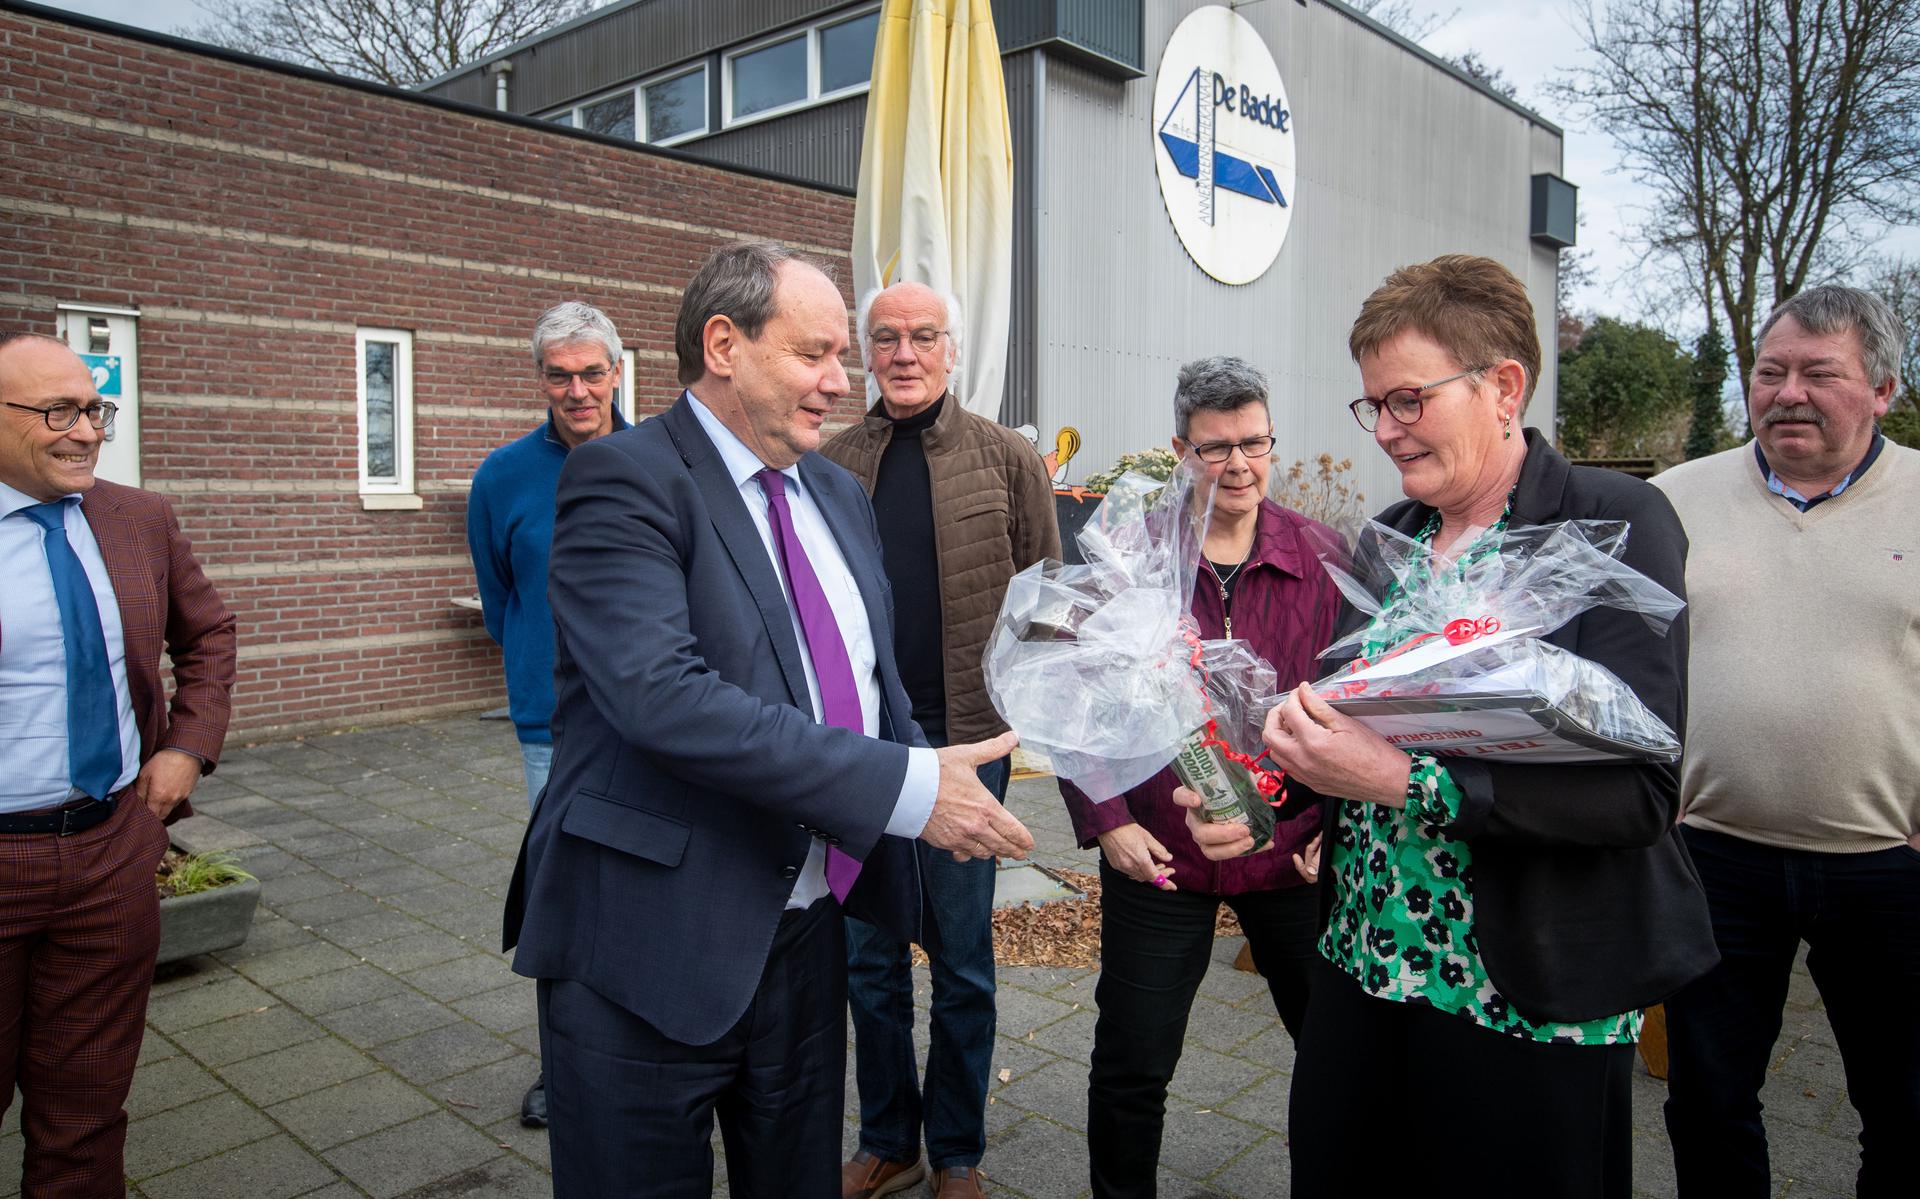 Gemeenteraadslid Ina Oortwijn biedt staatssecretaris Hans Vijlbrief een fles jenever, turf en een map met handtekeningen van bezorgde inwoners aan. Links burgemeester Anno Wietze Hiemstra.